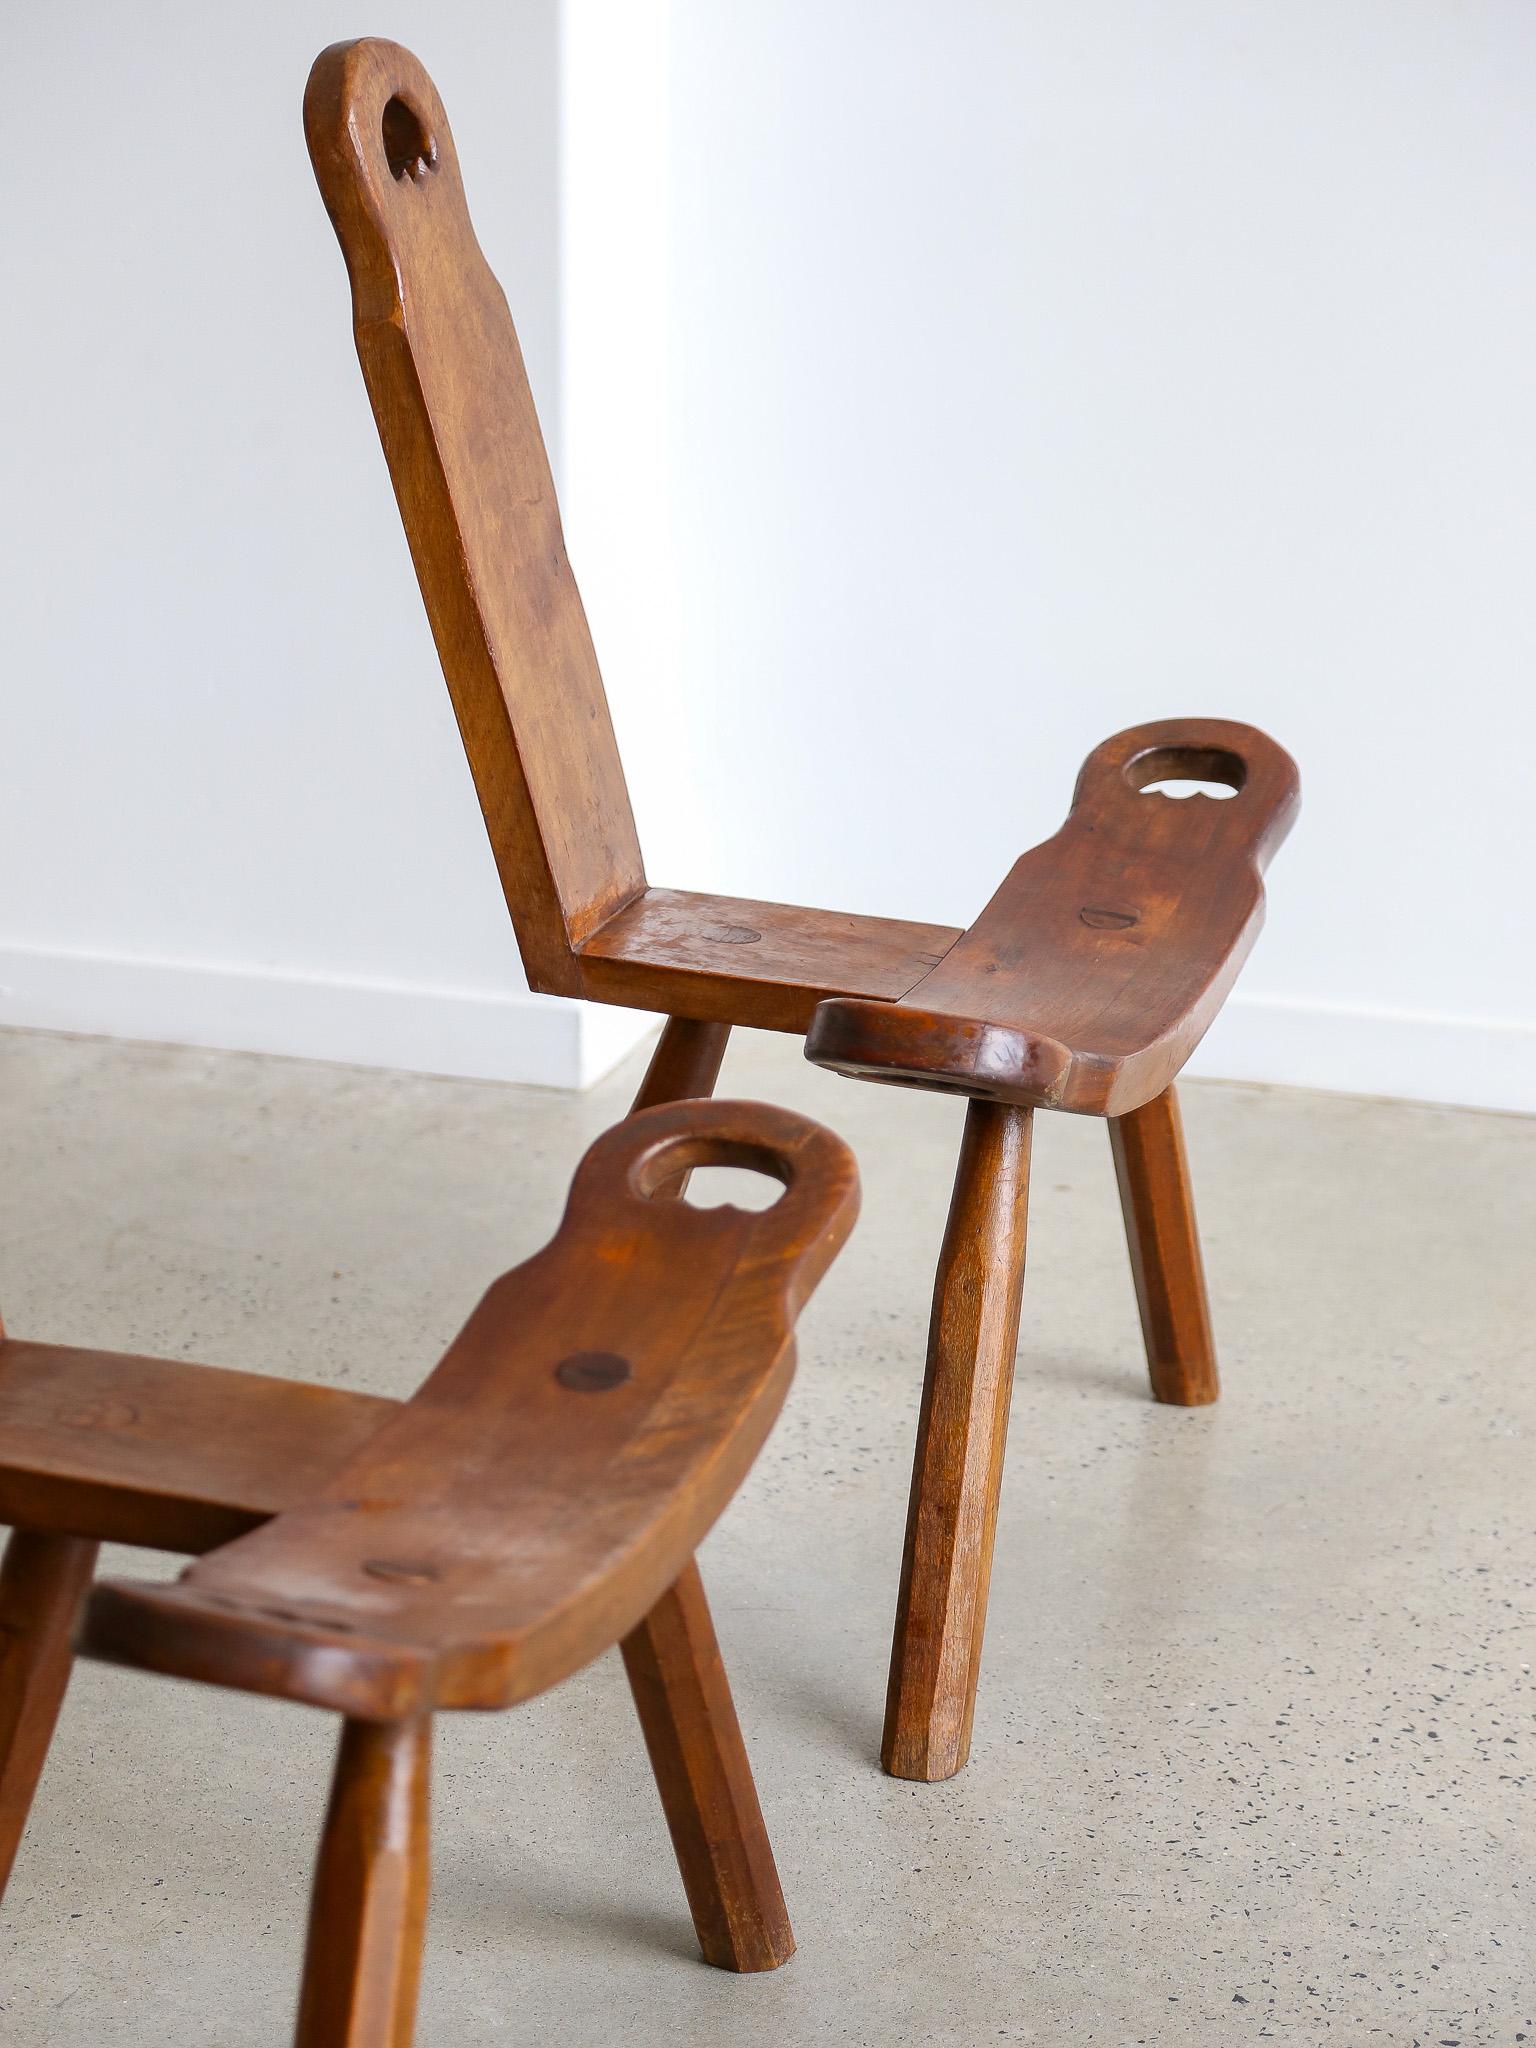 Der exquisite brutalistische spanische Dreibein-Skulpturenstuhl aus der Mitte des Jahrhunderts von 1950 Sie möchten Ihrer Einrichtung einen Hauch von einzigartiger Raffinesse verleihen? Der Brutalist Spanish Sculptural Mid-Century Tripod Chair aus